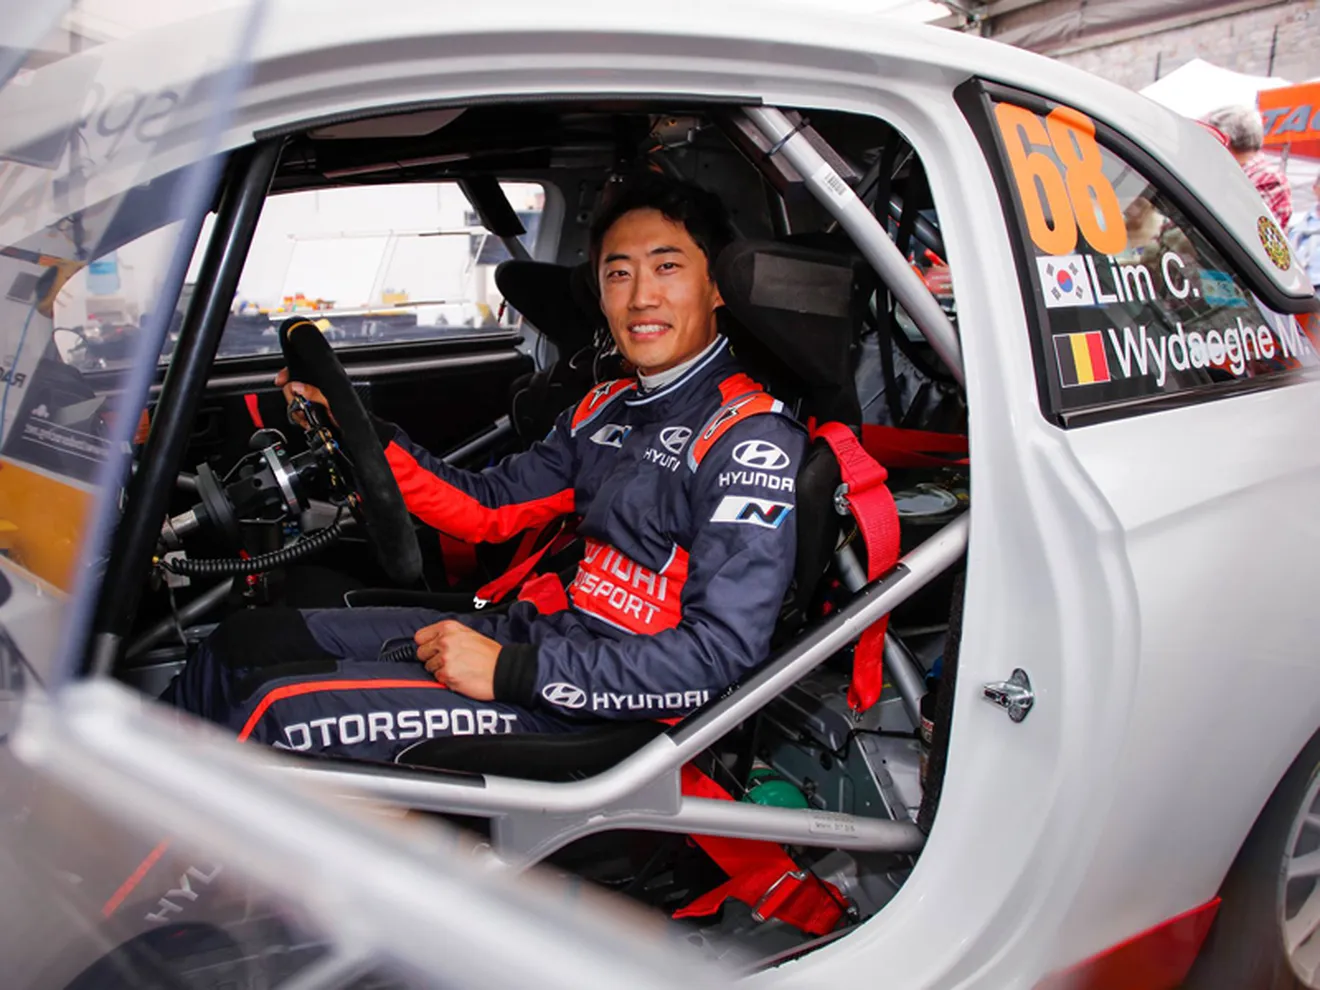 Chewon Lim, protegido de Hyundai, llega al WRC